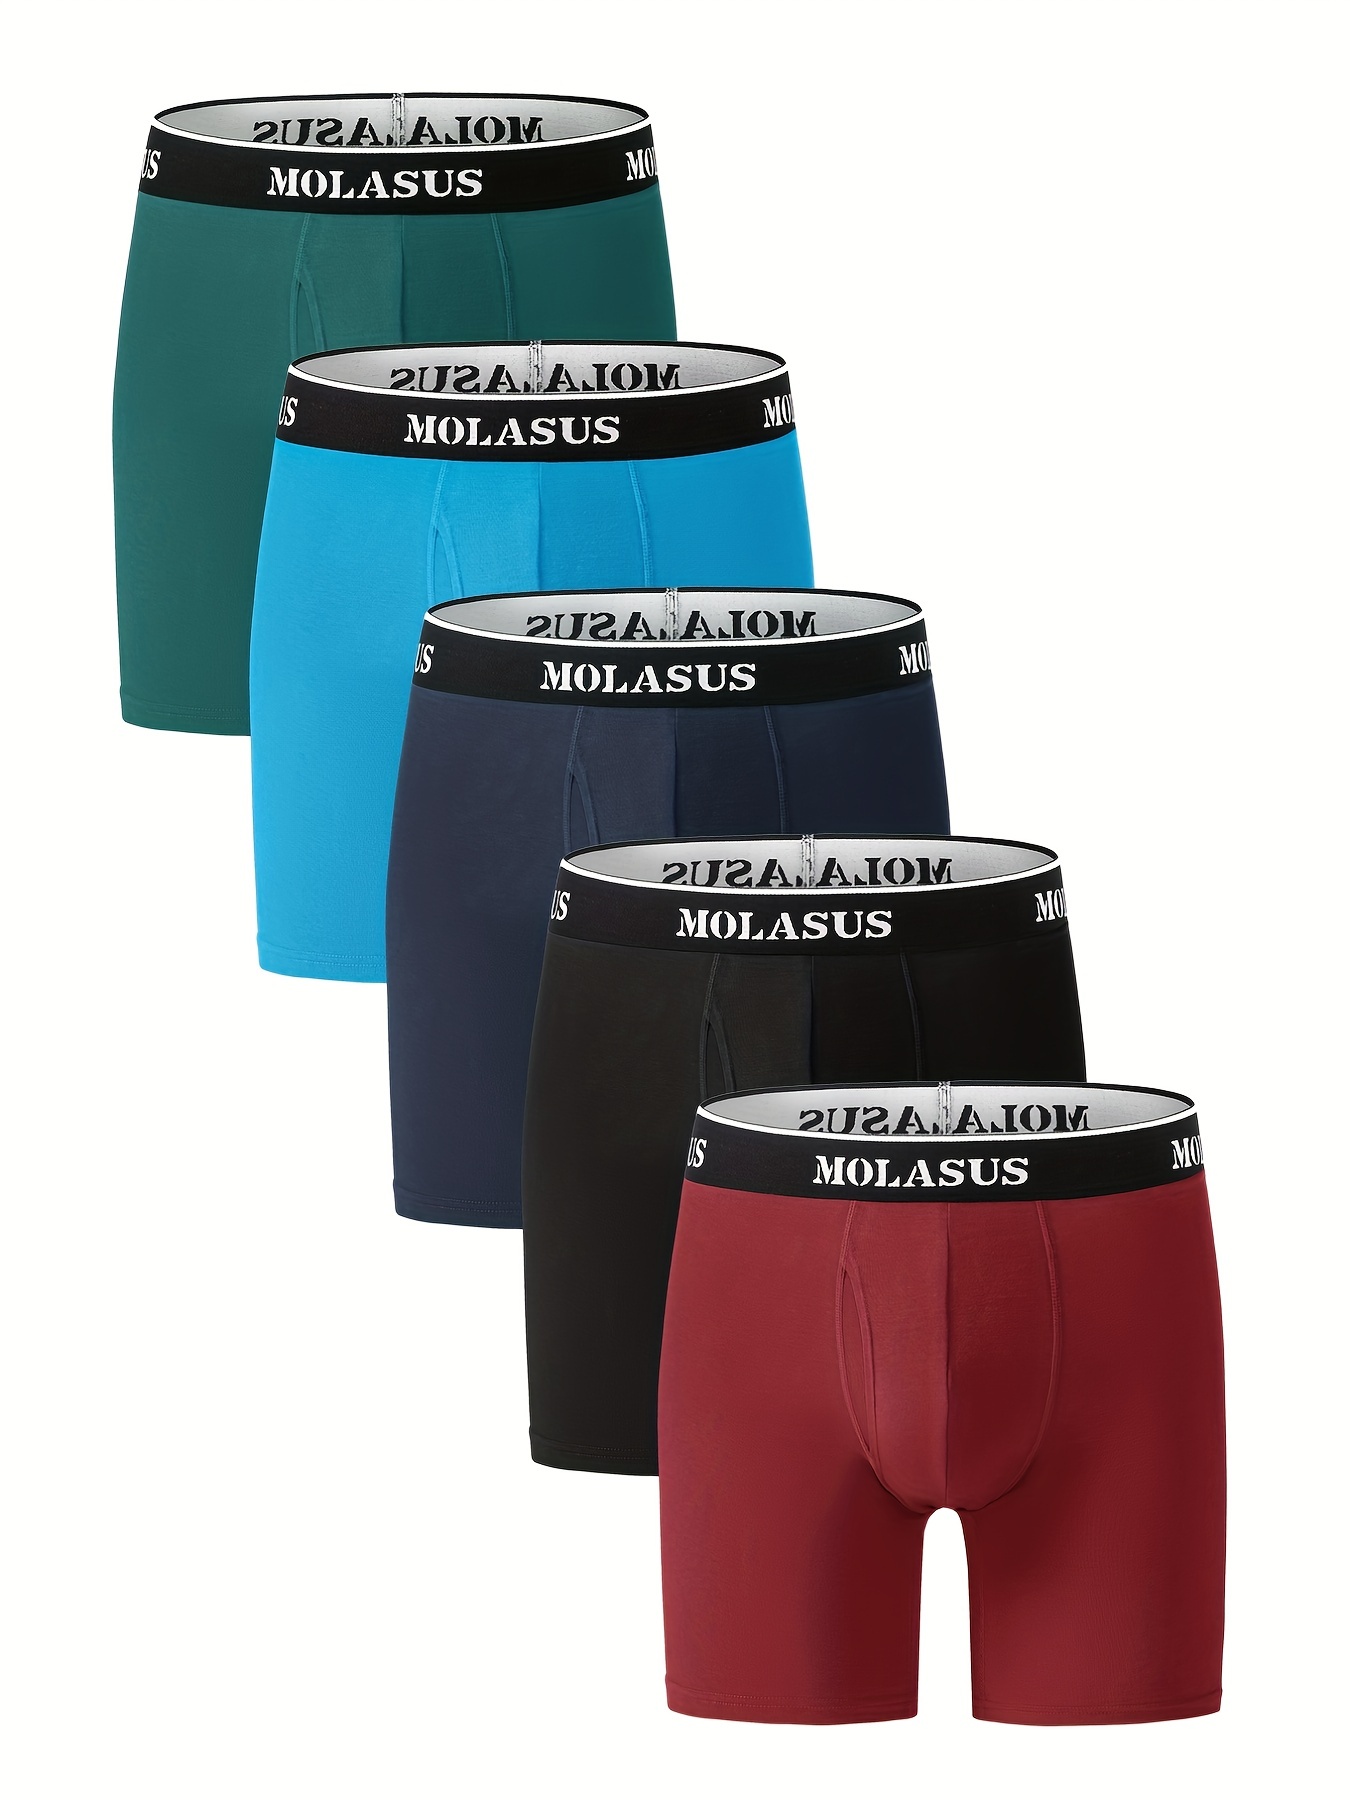 5 Pcs Men's Boxer Briefs Cotton Breathable Comfortable Underwear